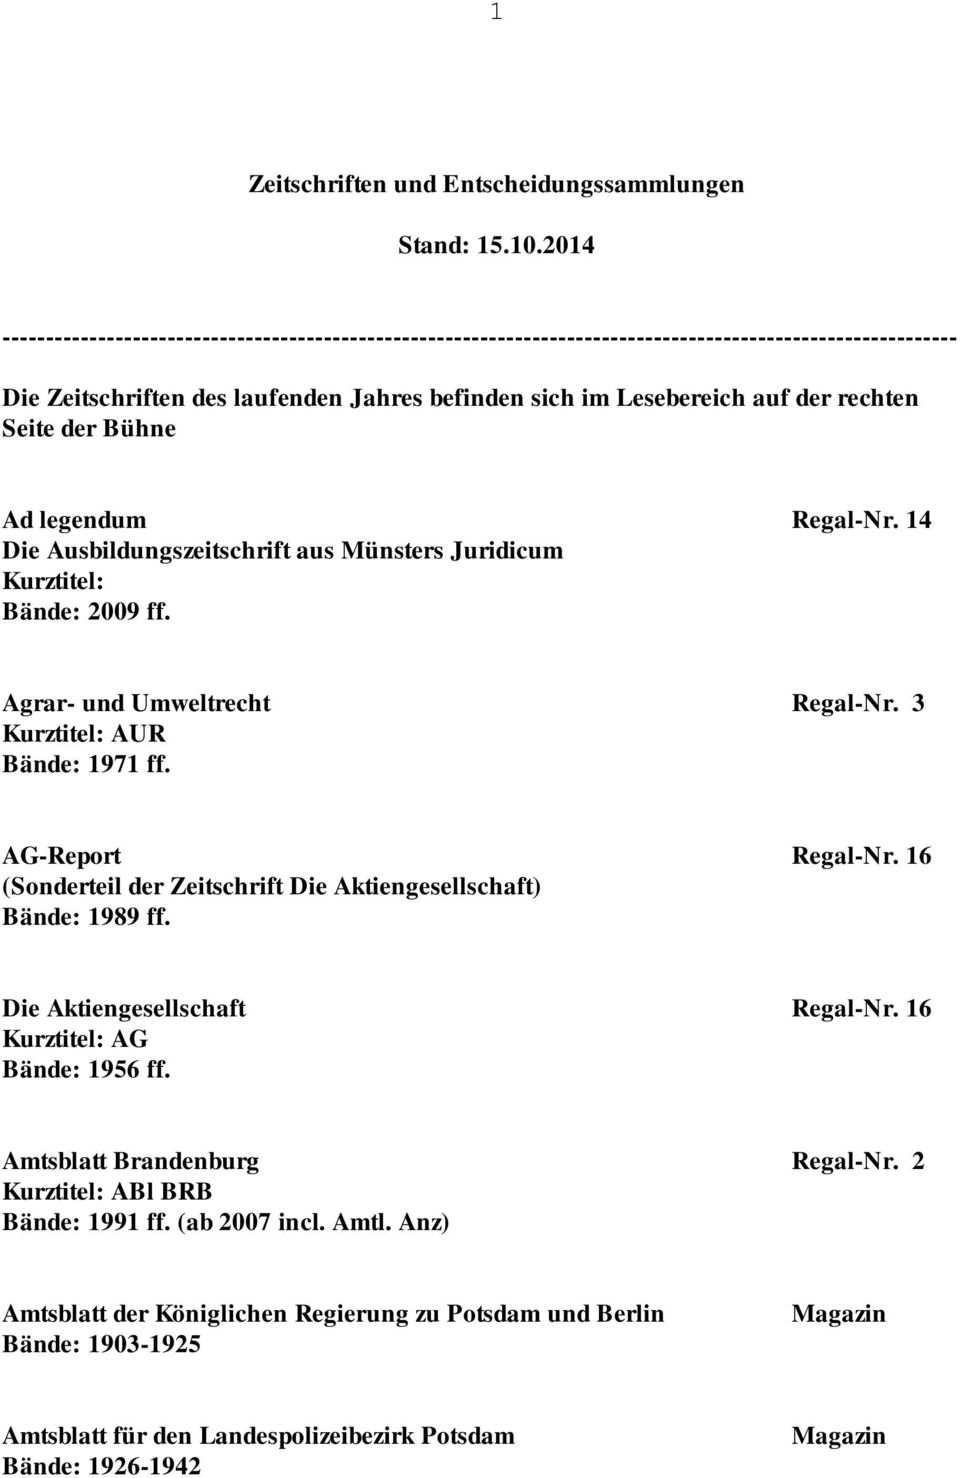 rechten Seite der Bühne Ad legendum Regal-Nr. 14 Die Ausbildungszeitschrift aus Münsters Juridicum Bände: 2009 ff. Agrar- und Umweltrecht Regal-Nr. 3 AUR Bände: 1971 ff. AG-Report Regal-Nr.